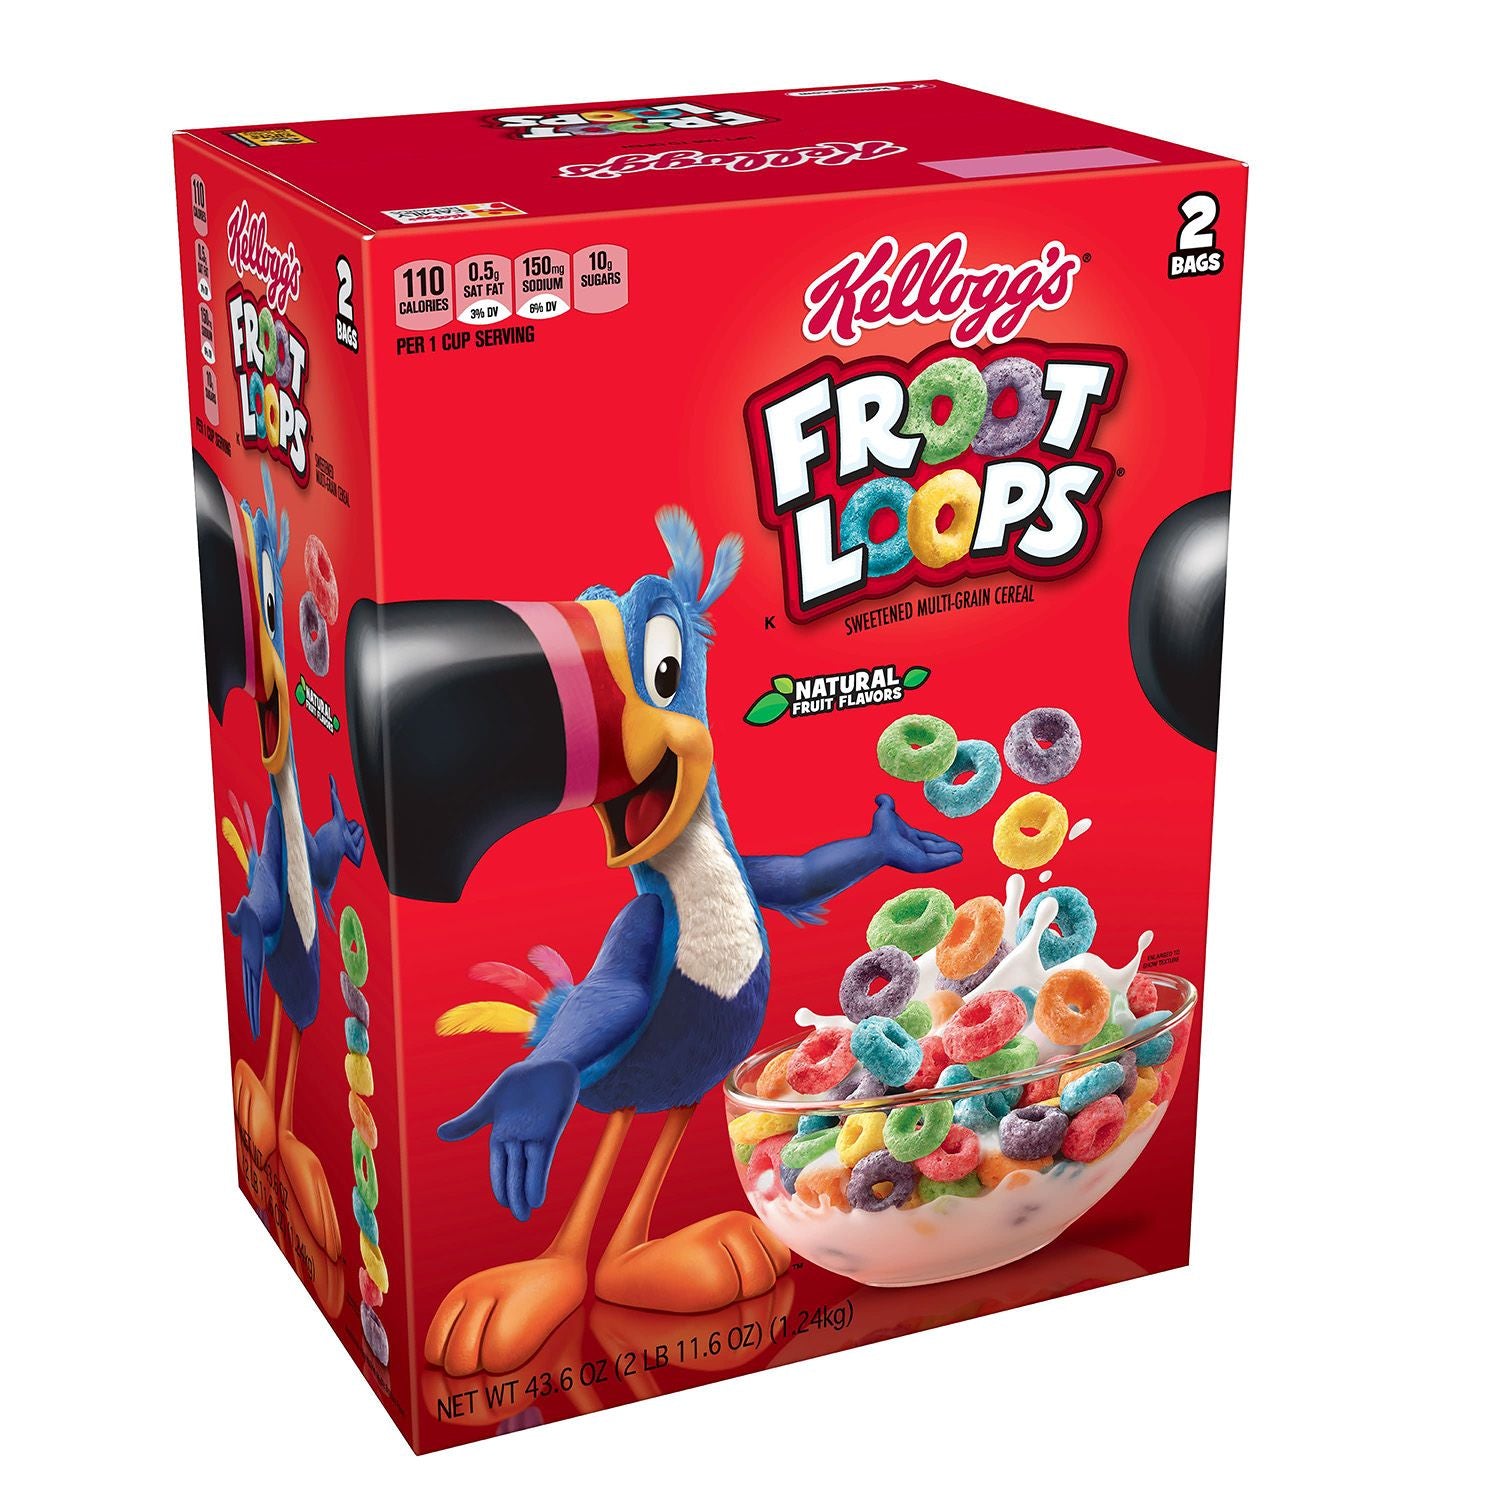 Froot Loops Cereal, Multi-Grain, Sweetened - 2 bags, 43.6 oz